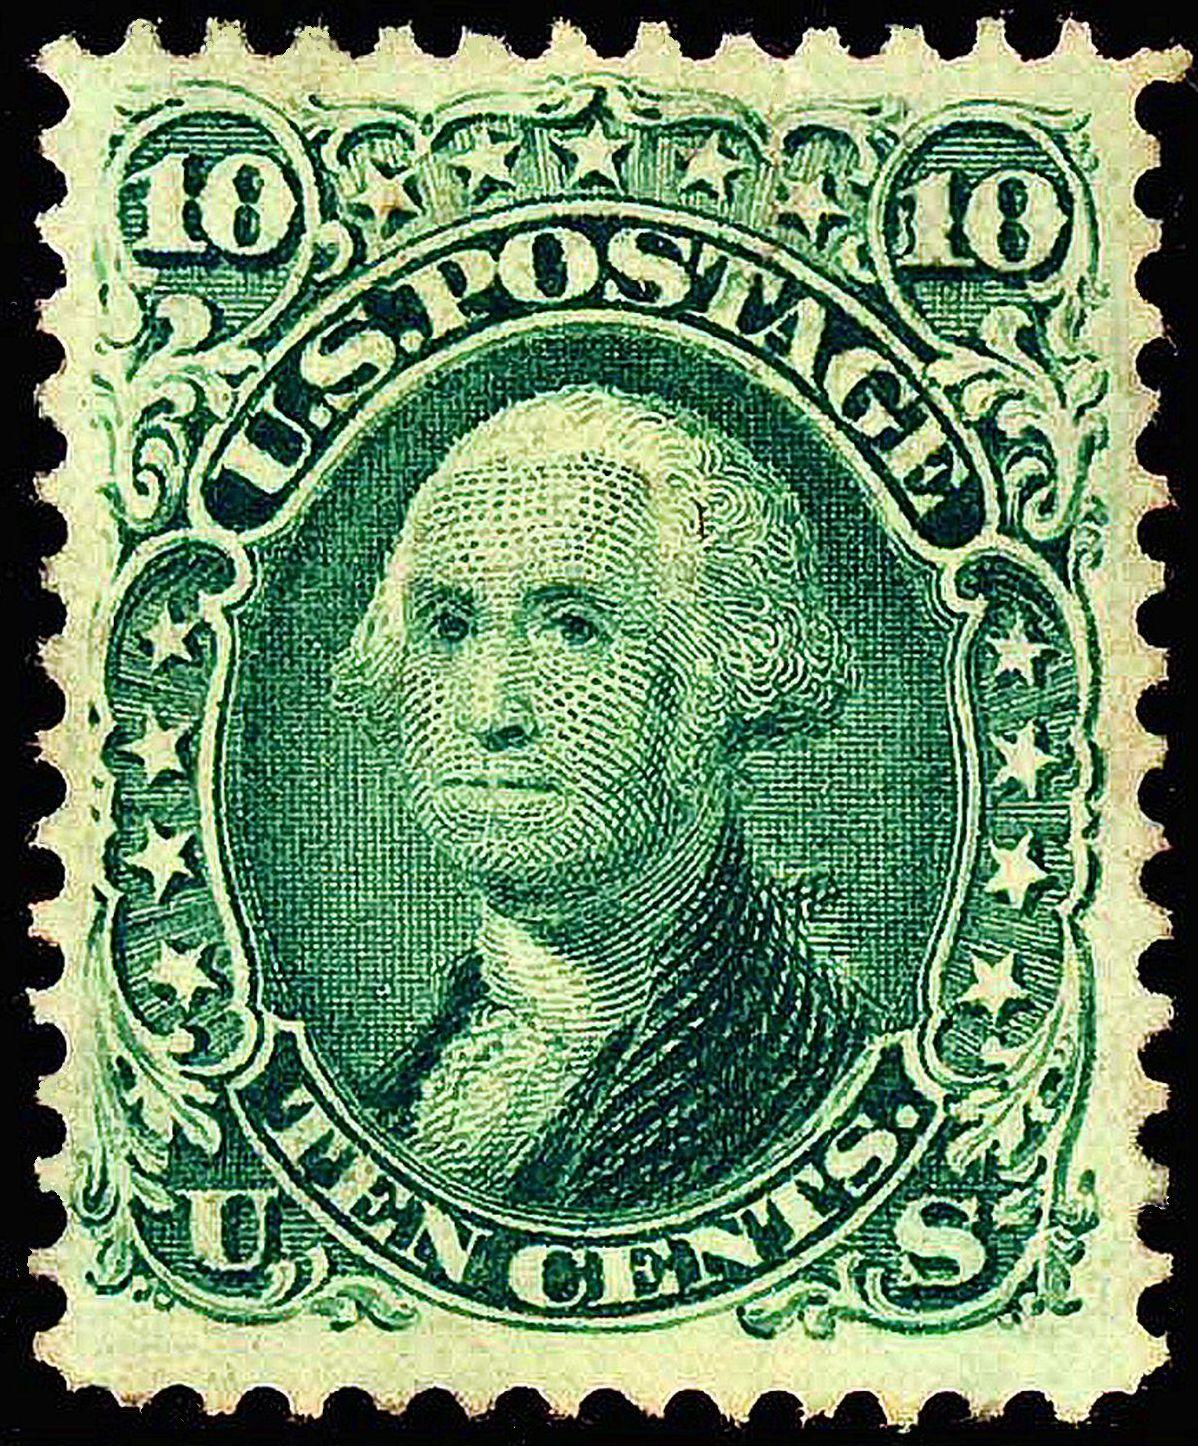 George Washington2 1861 Issue 10c